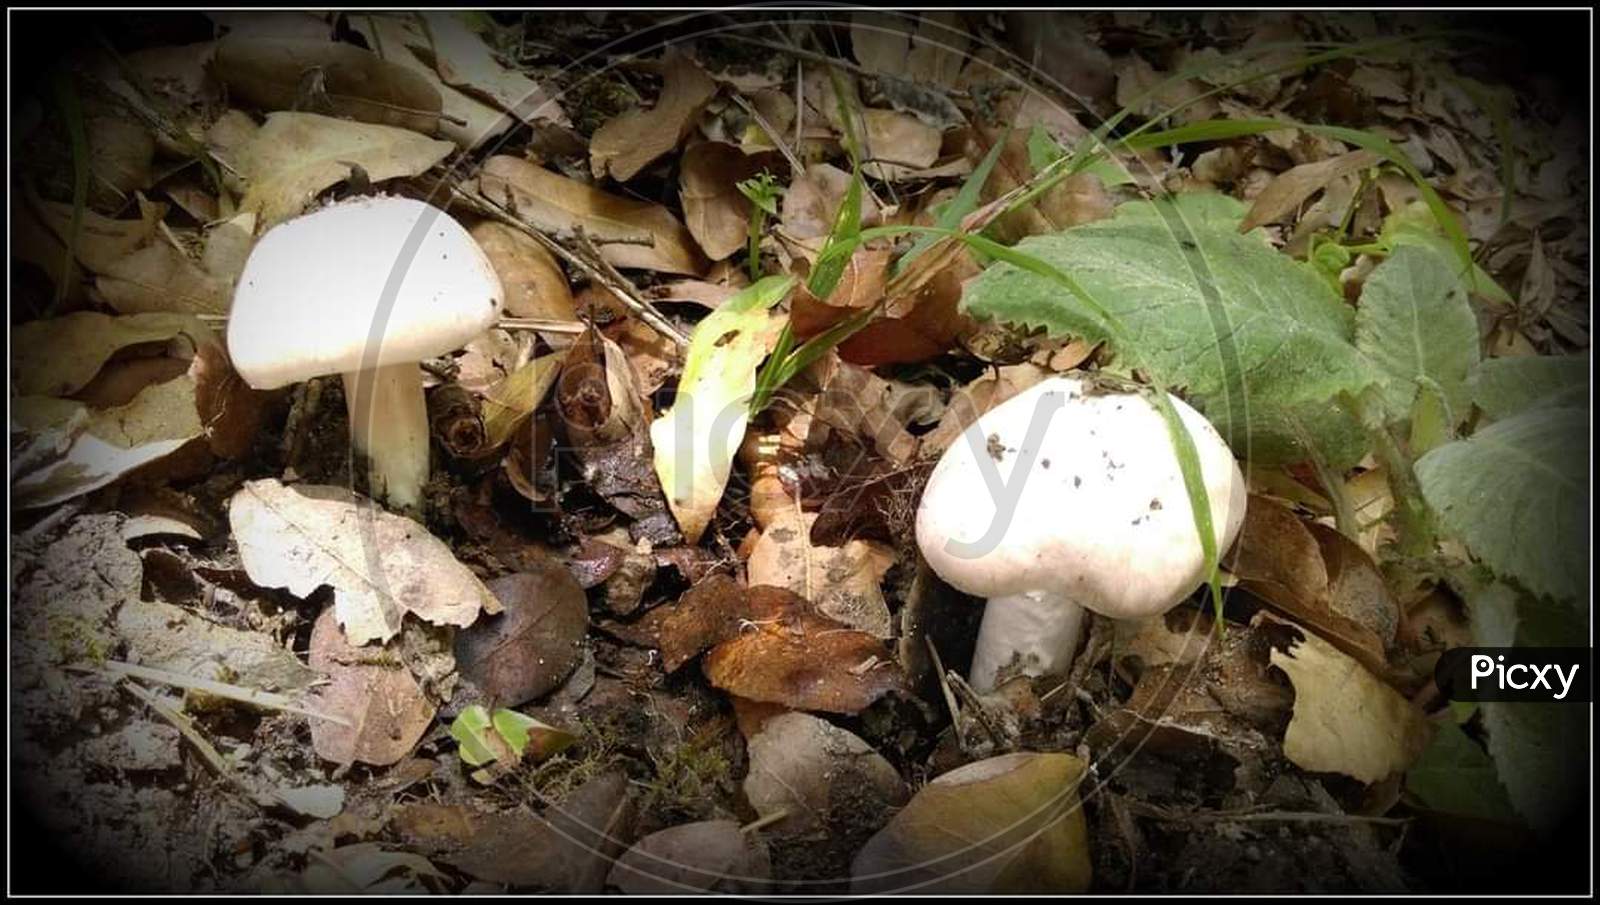 Mushroom, wild mushroom